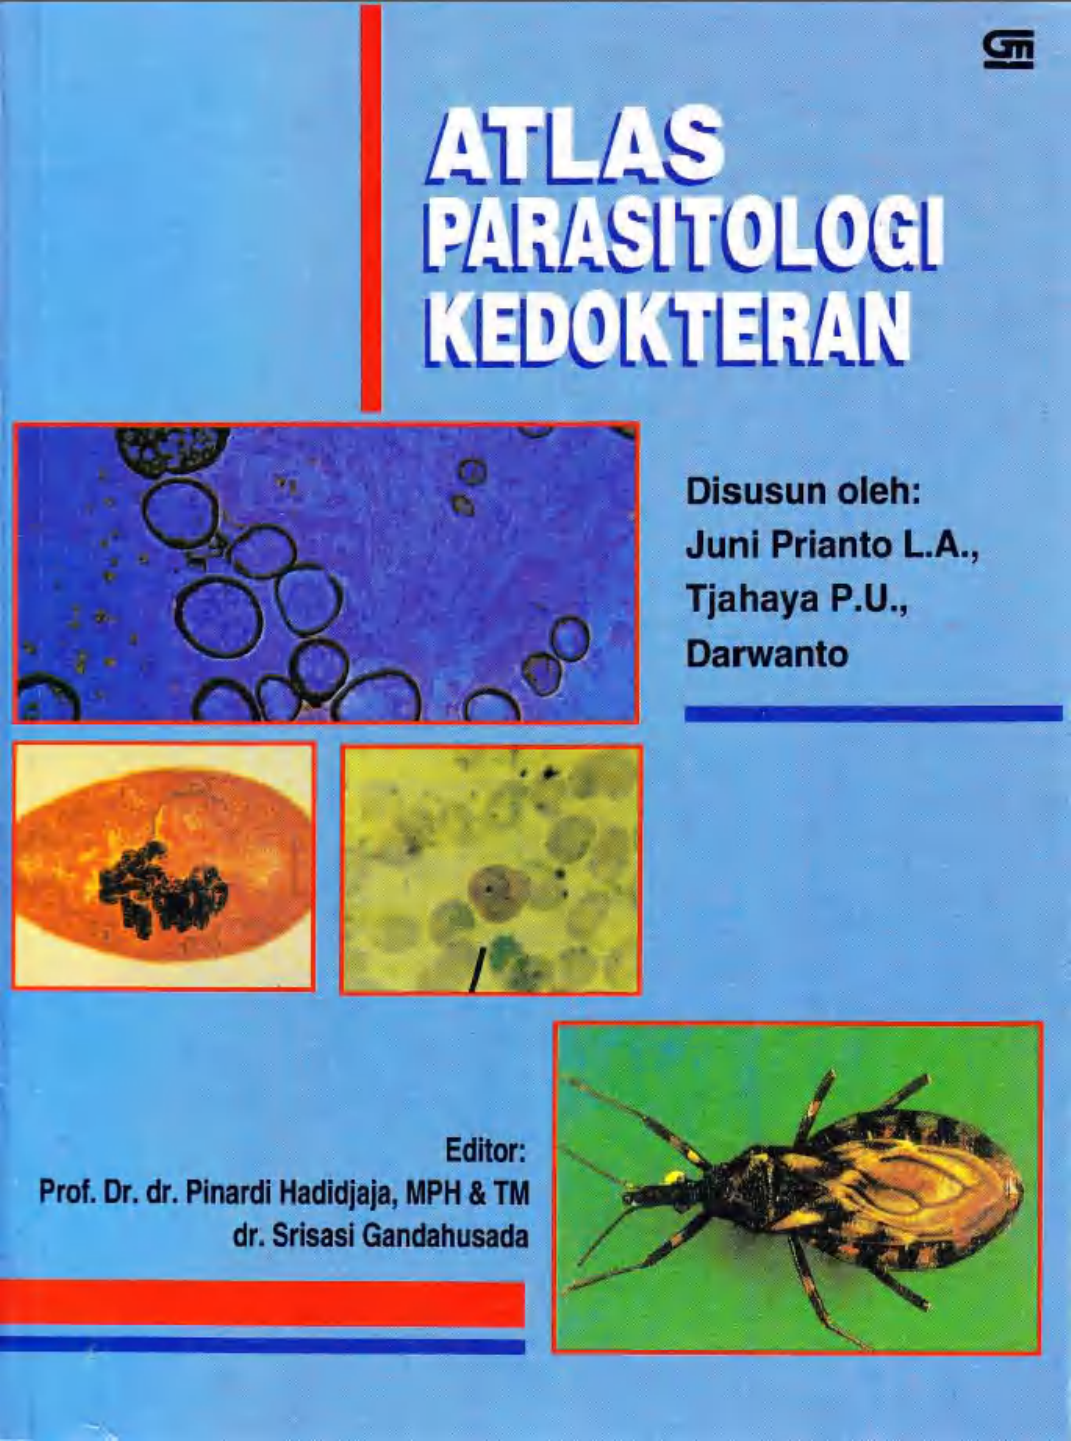 Parasitologi adalah